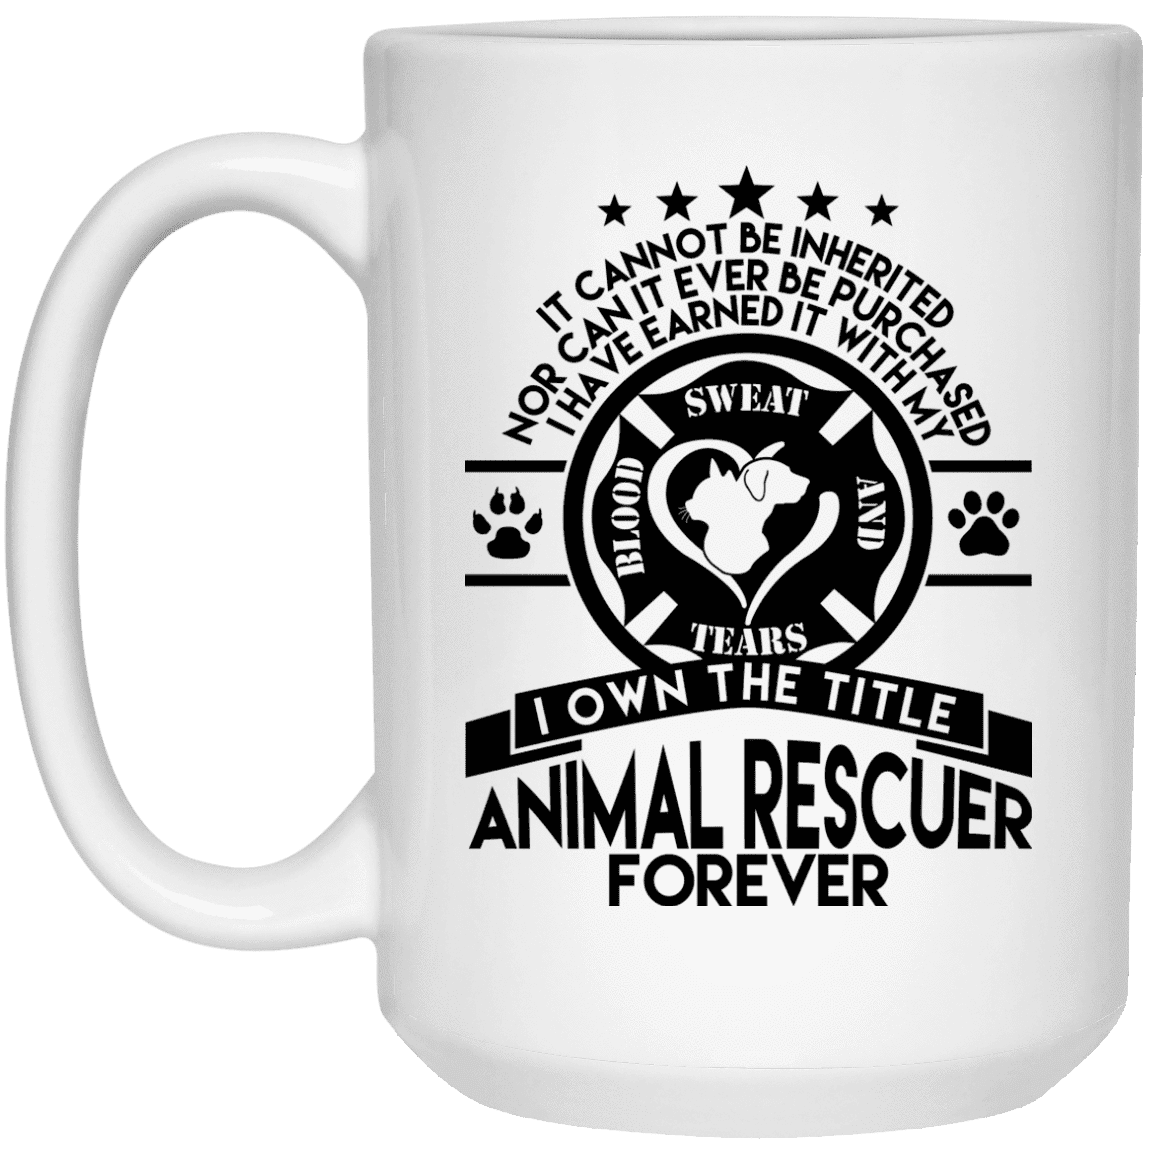 Animal Rescuer Forever - Mugs.